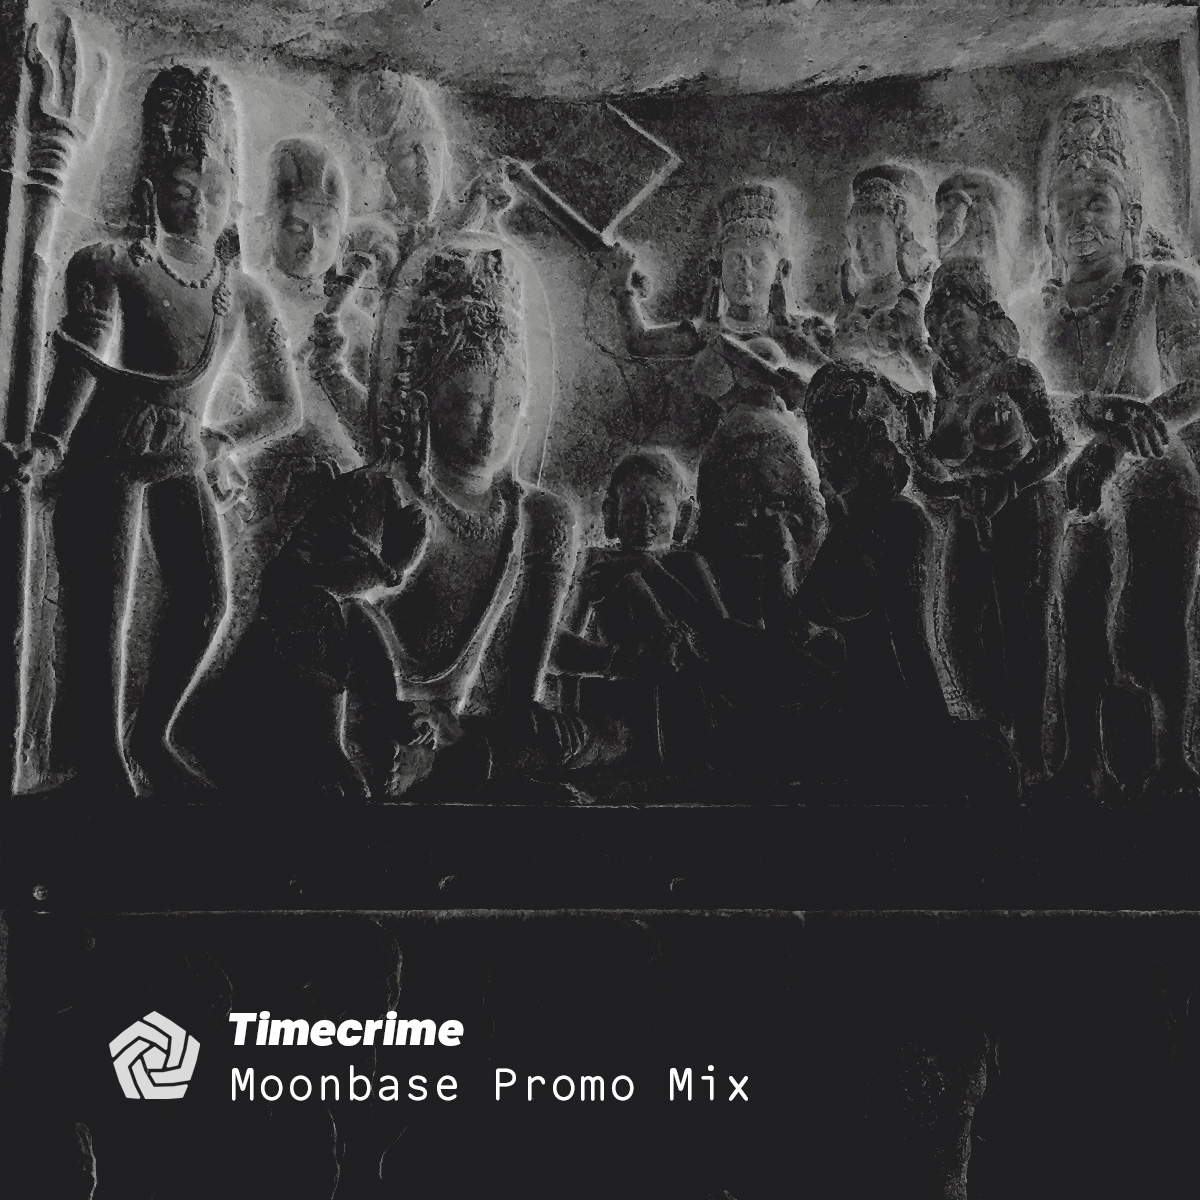 Moonbase Promo Mix